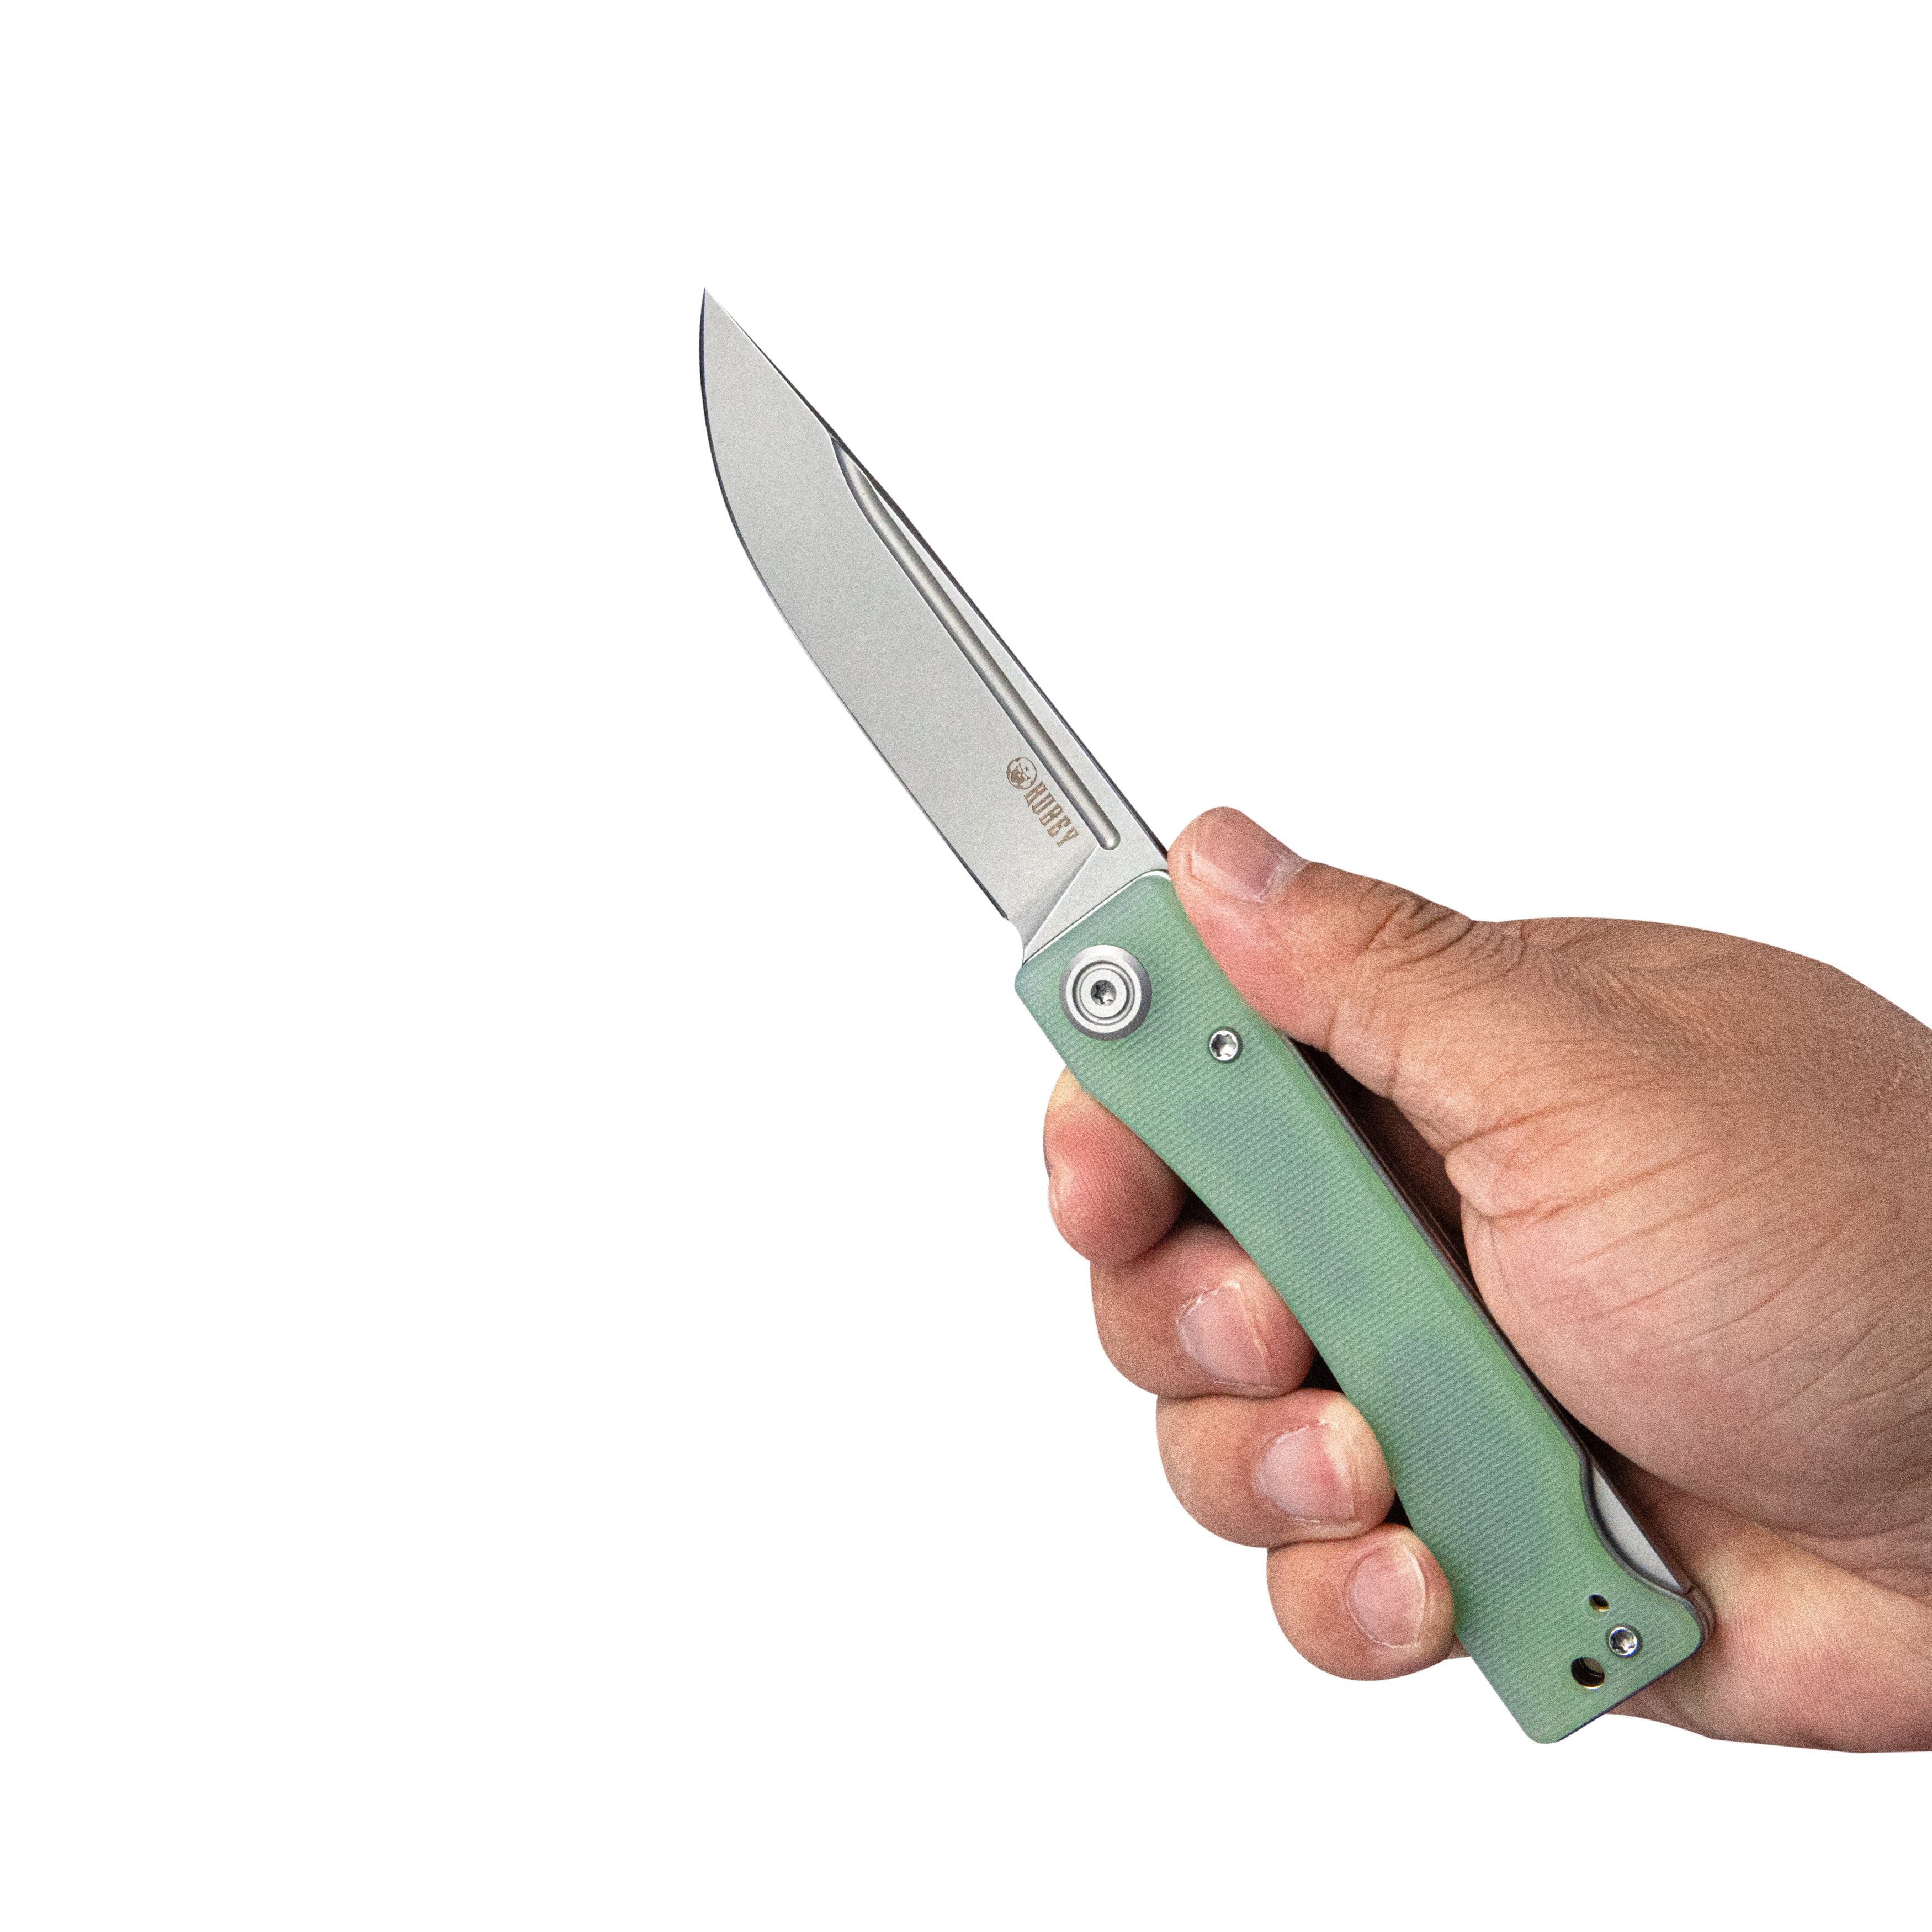 Kubey Akino Lockback Pocket Folding Knife Jade G10 Handle 3.15" Bead Blasted Sandvik 14C28N KU2102B